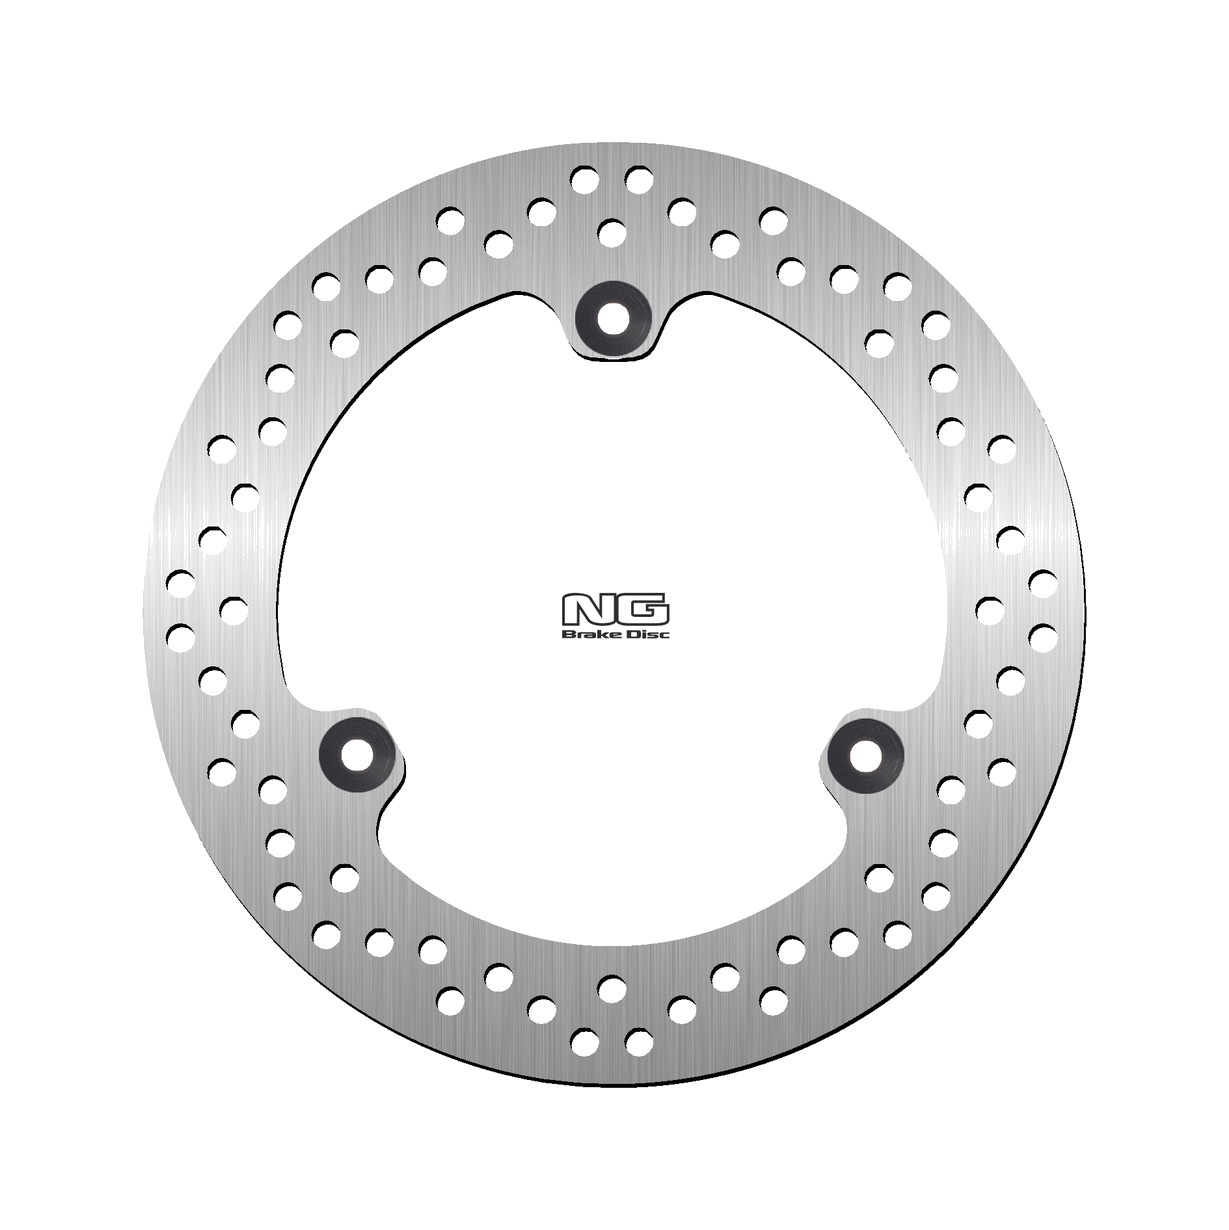 NG BRAKE DISK Rear brake disc 1757 245X132X5.0 - Picture 1 of 1